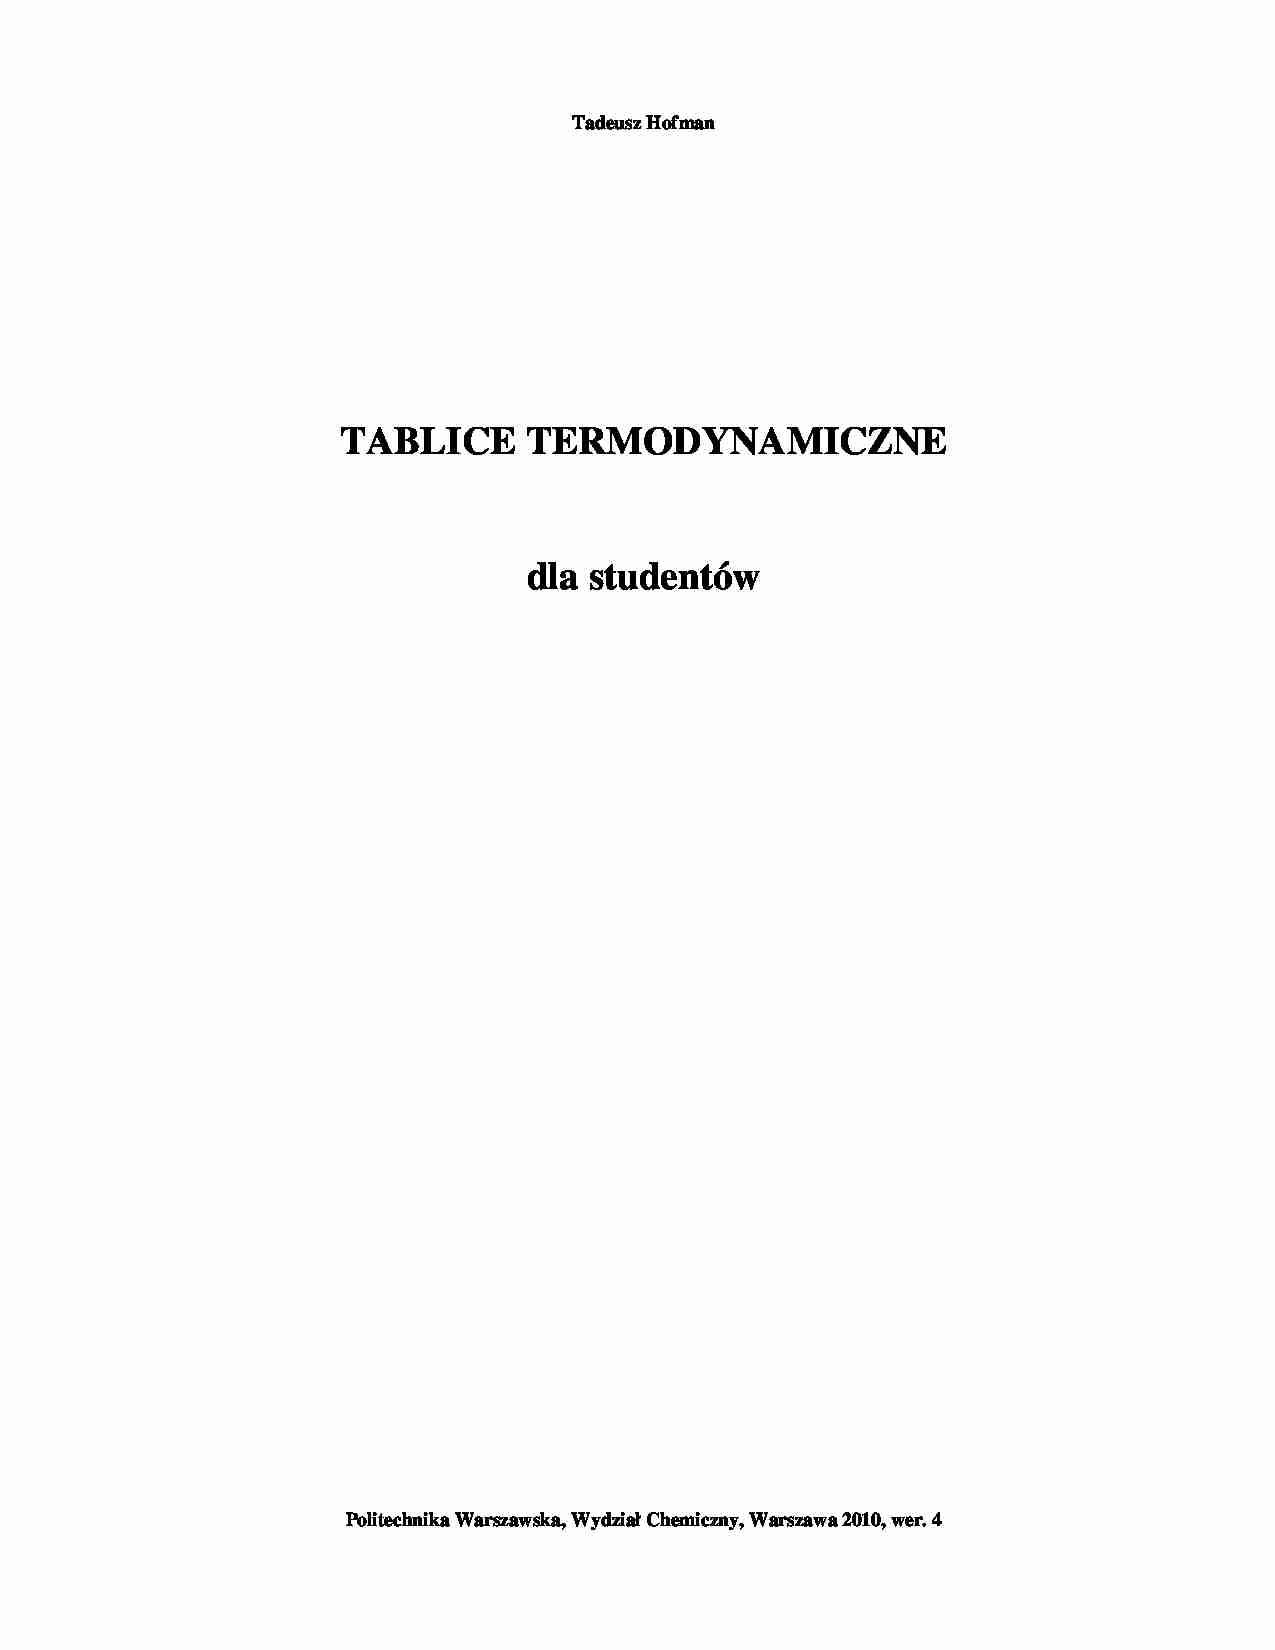 Tablice termodynamiczne - wykład - strona 1